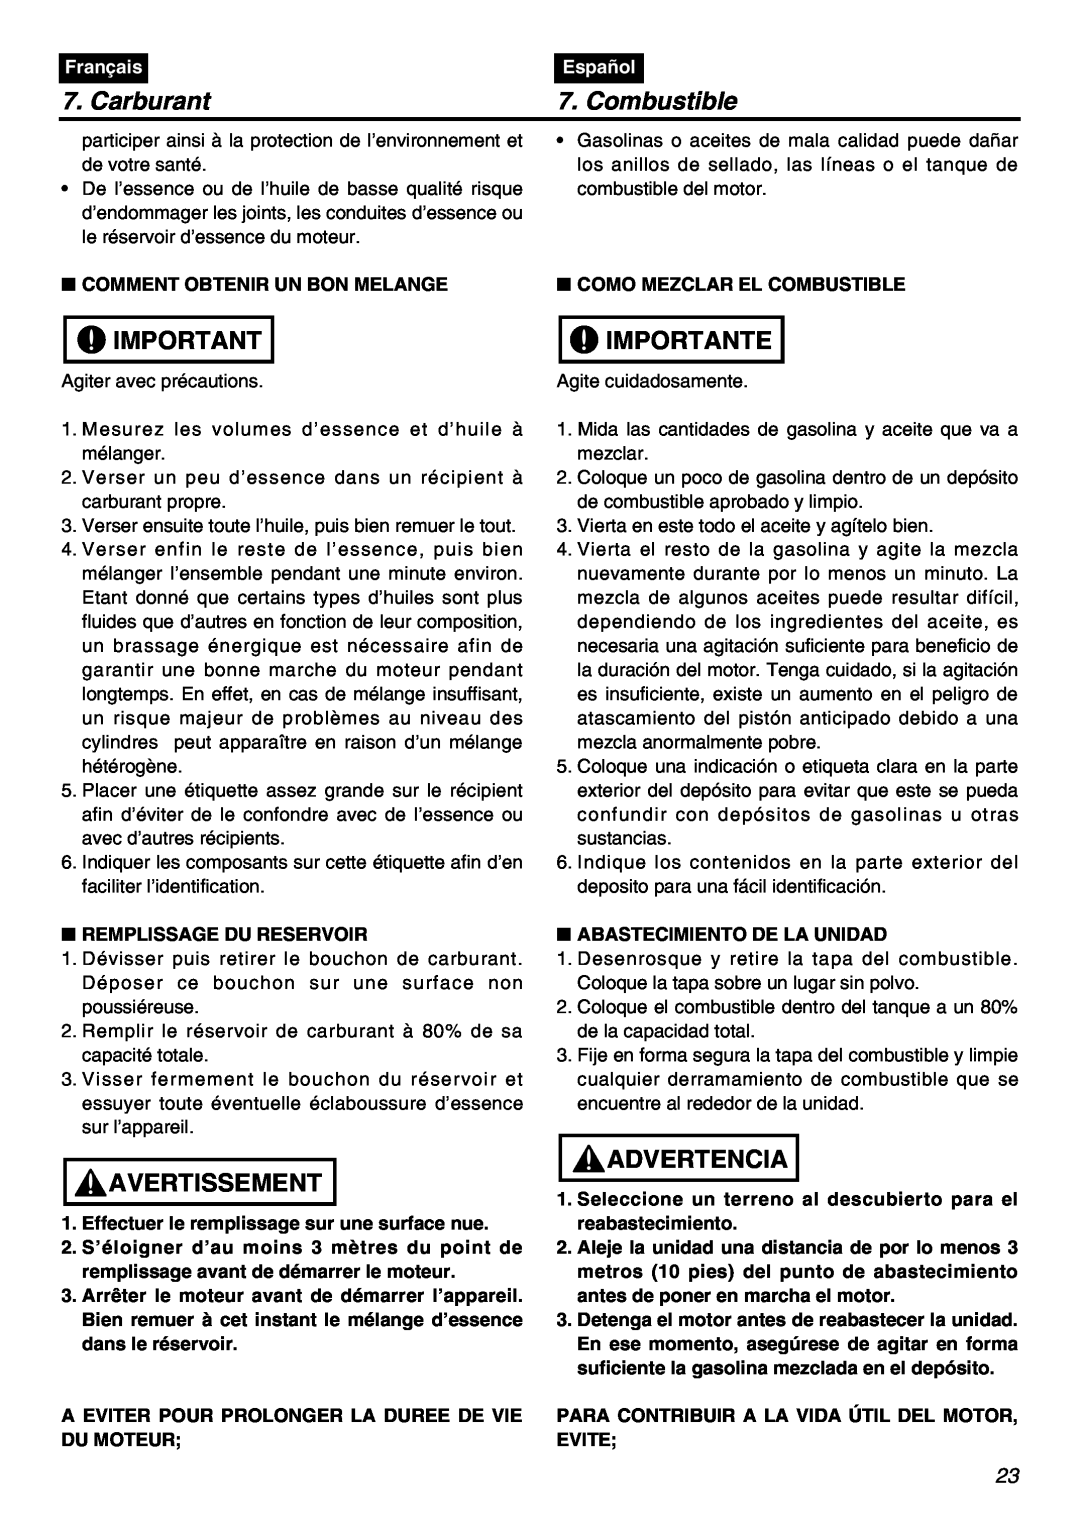 RedMax BCZ2401S-CA manual Carburant, Combustible, Importante, Avertissement, Advertencia, Français, Español 